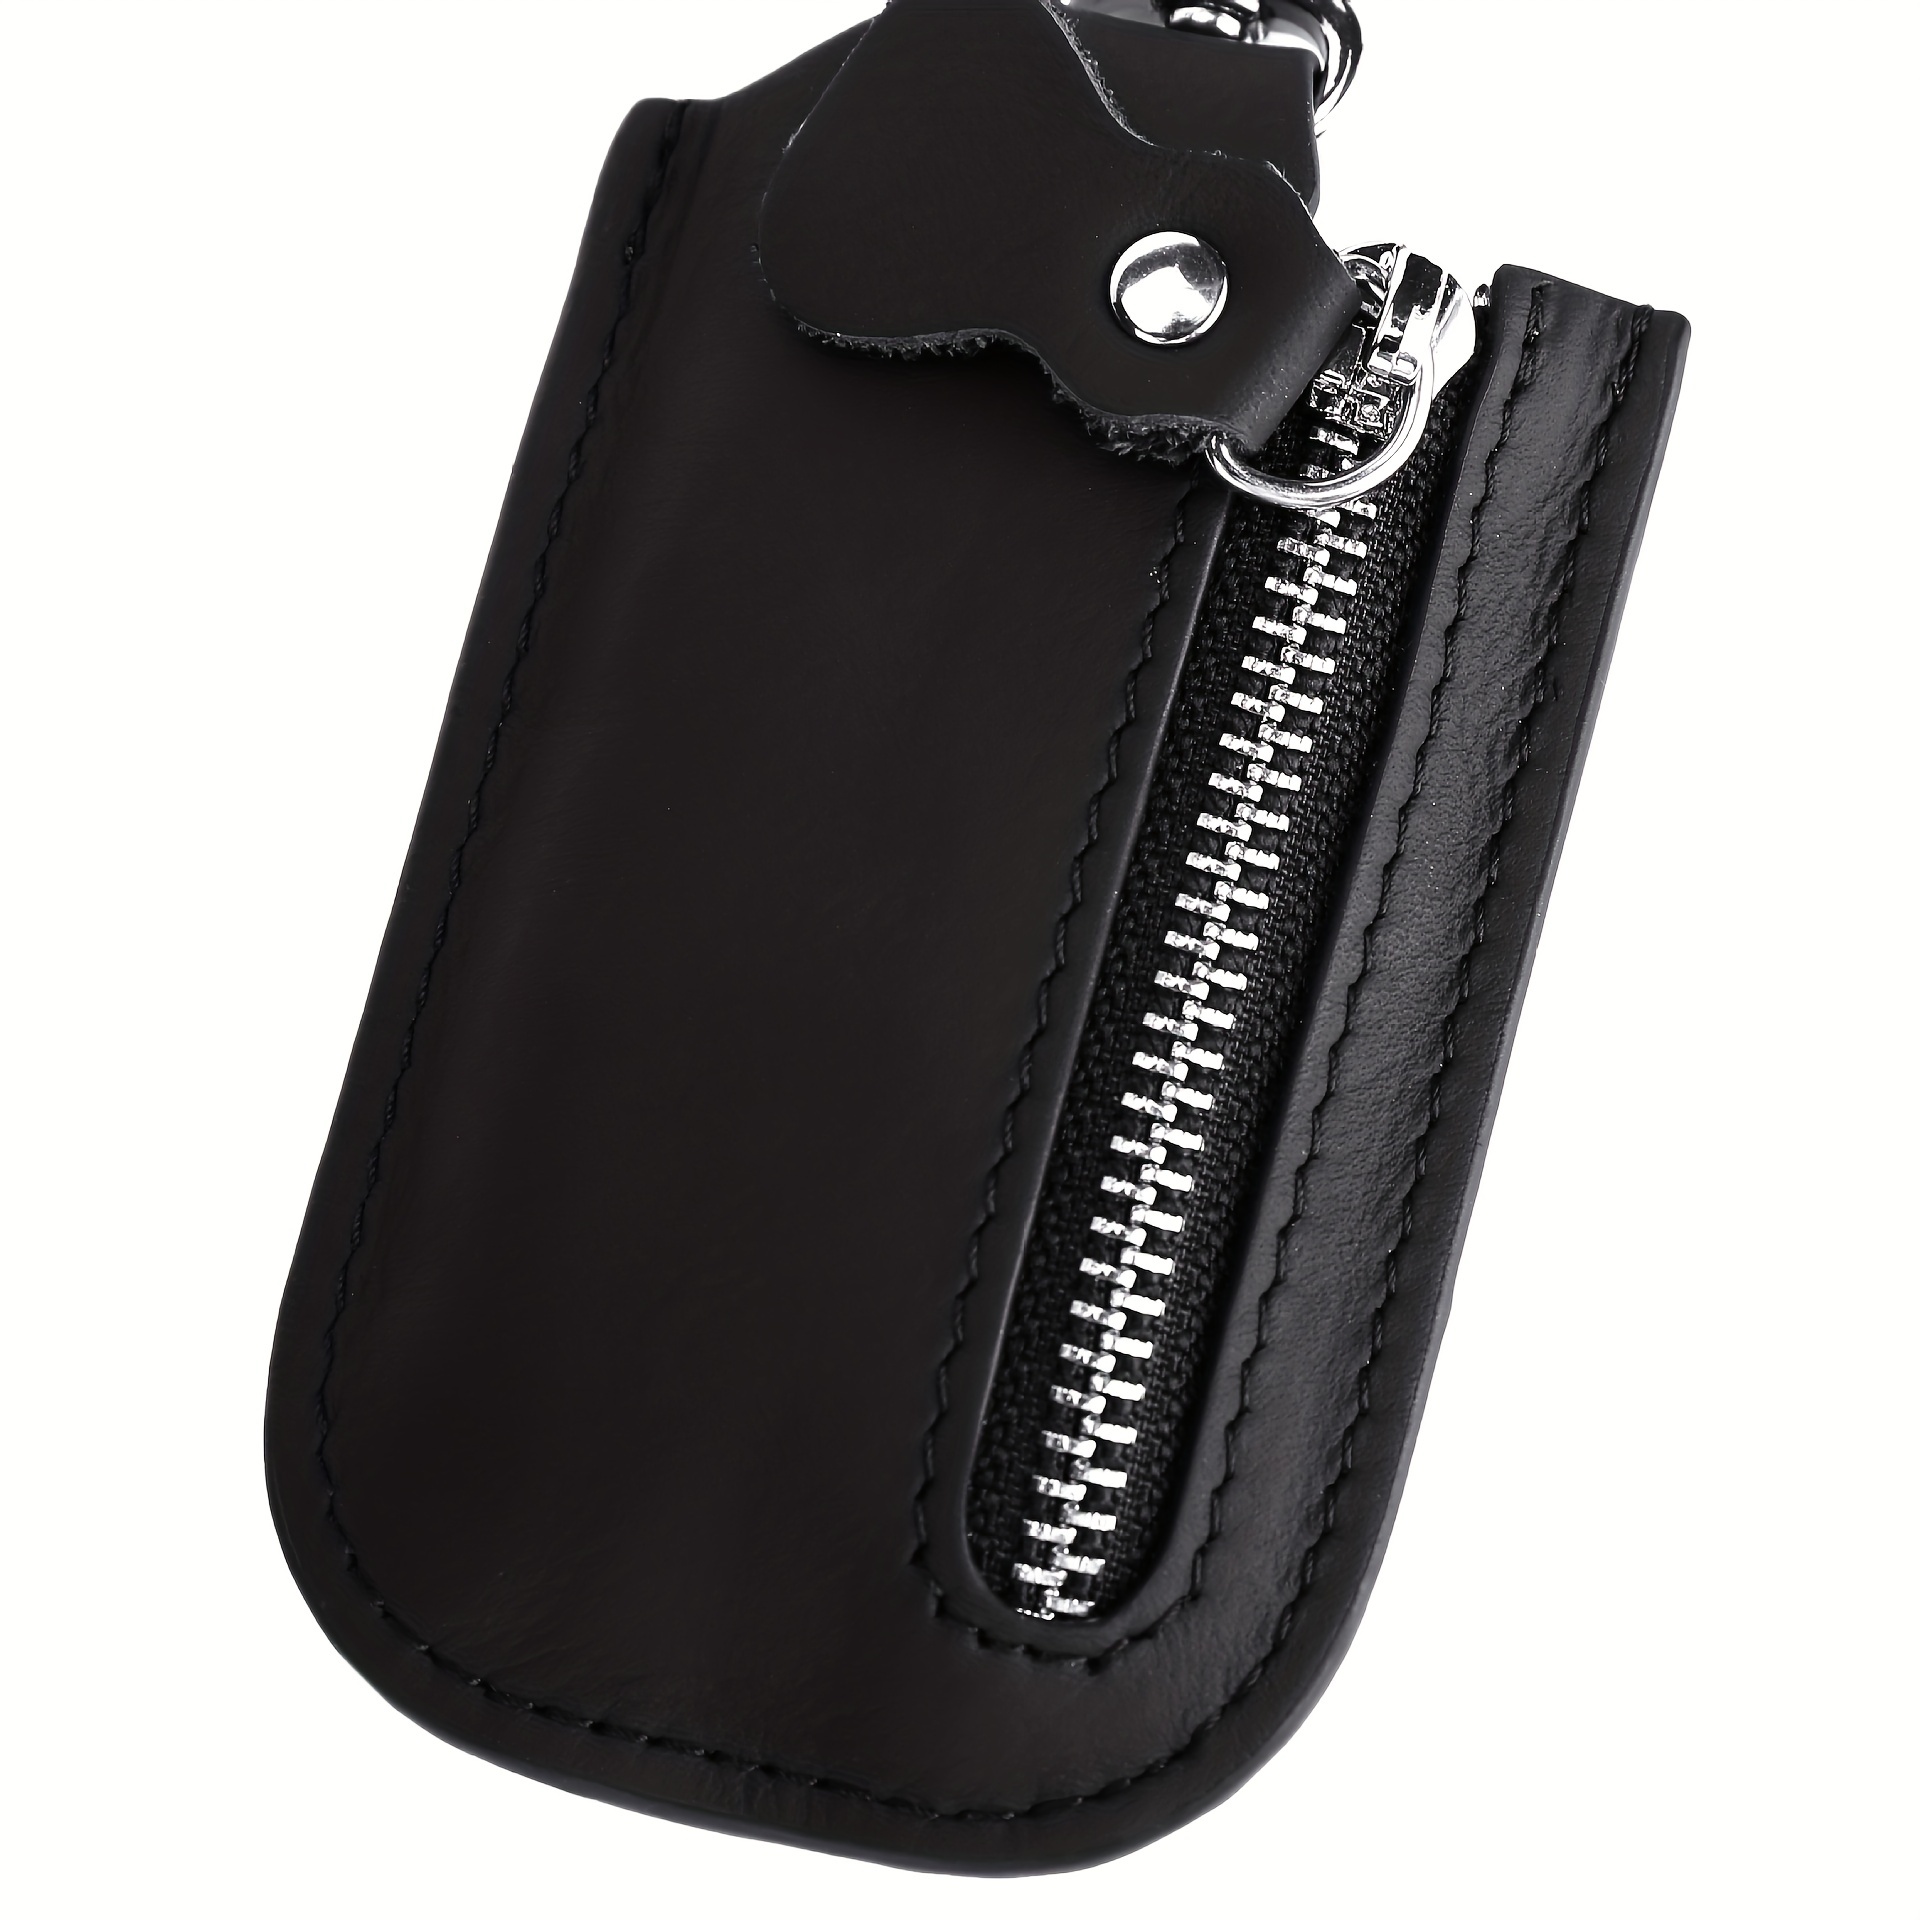 1pc Einfarbiger Leder-Schlüsselhalter, Autoschlüssel-Tasche